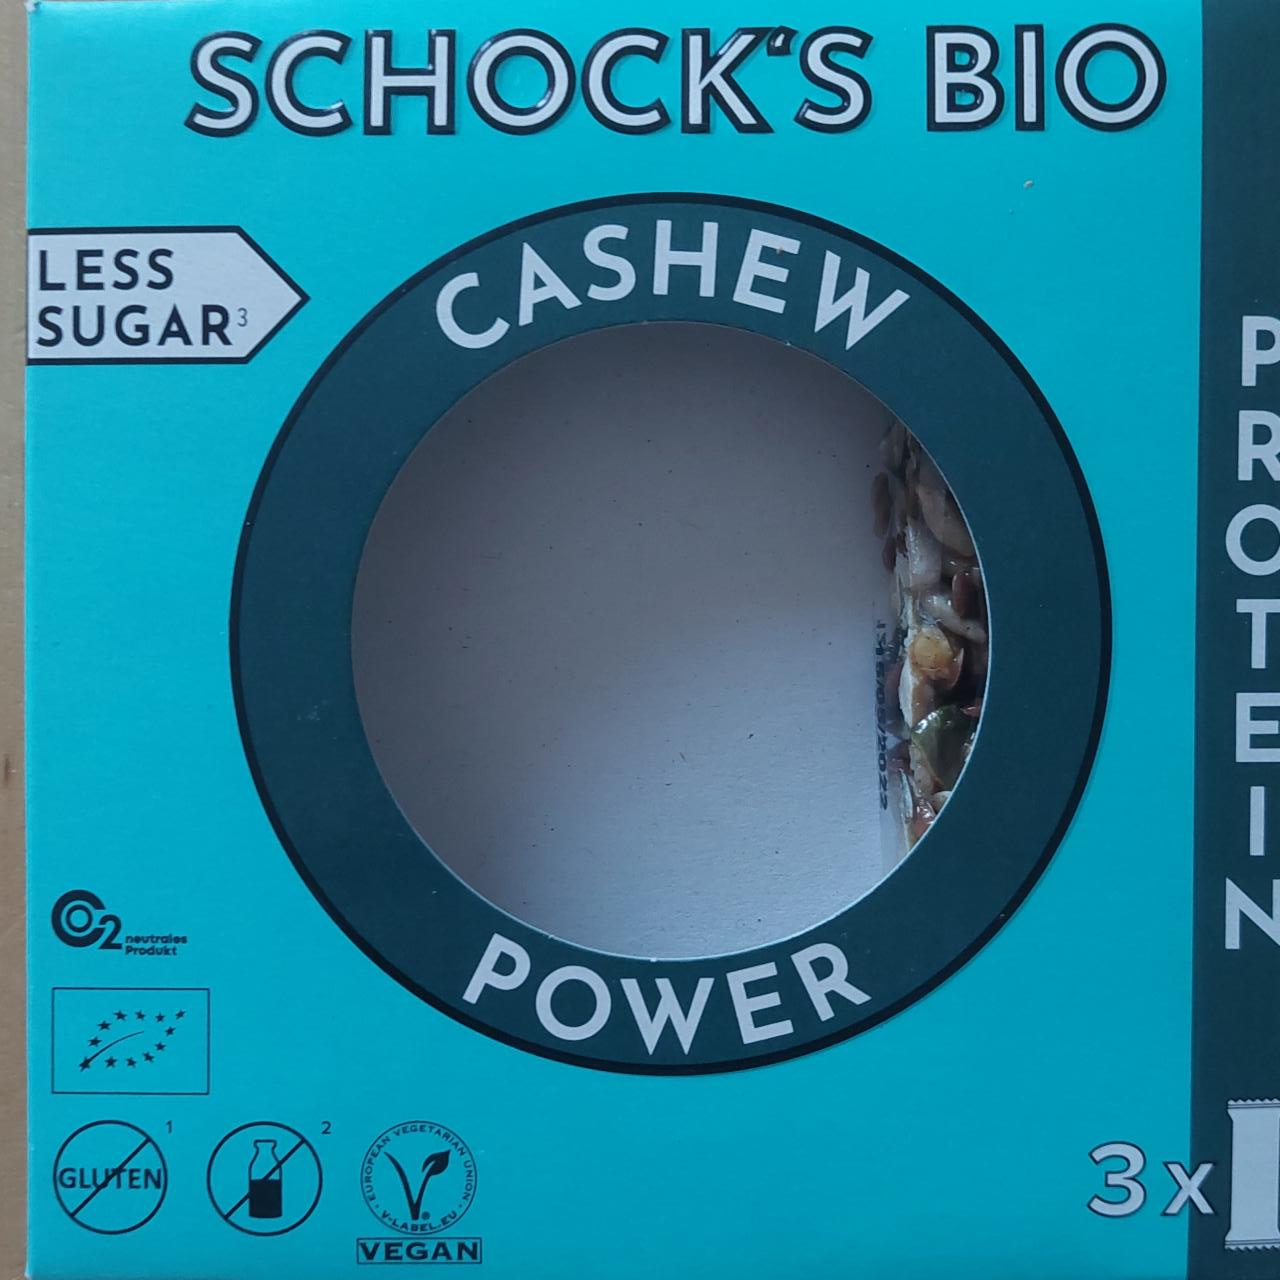 Fotografie - Shocks bio Cashew Power